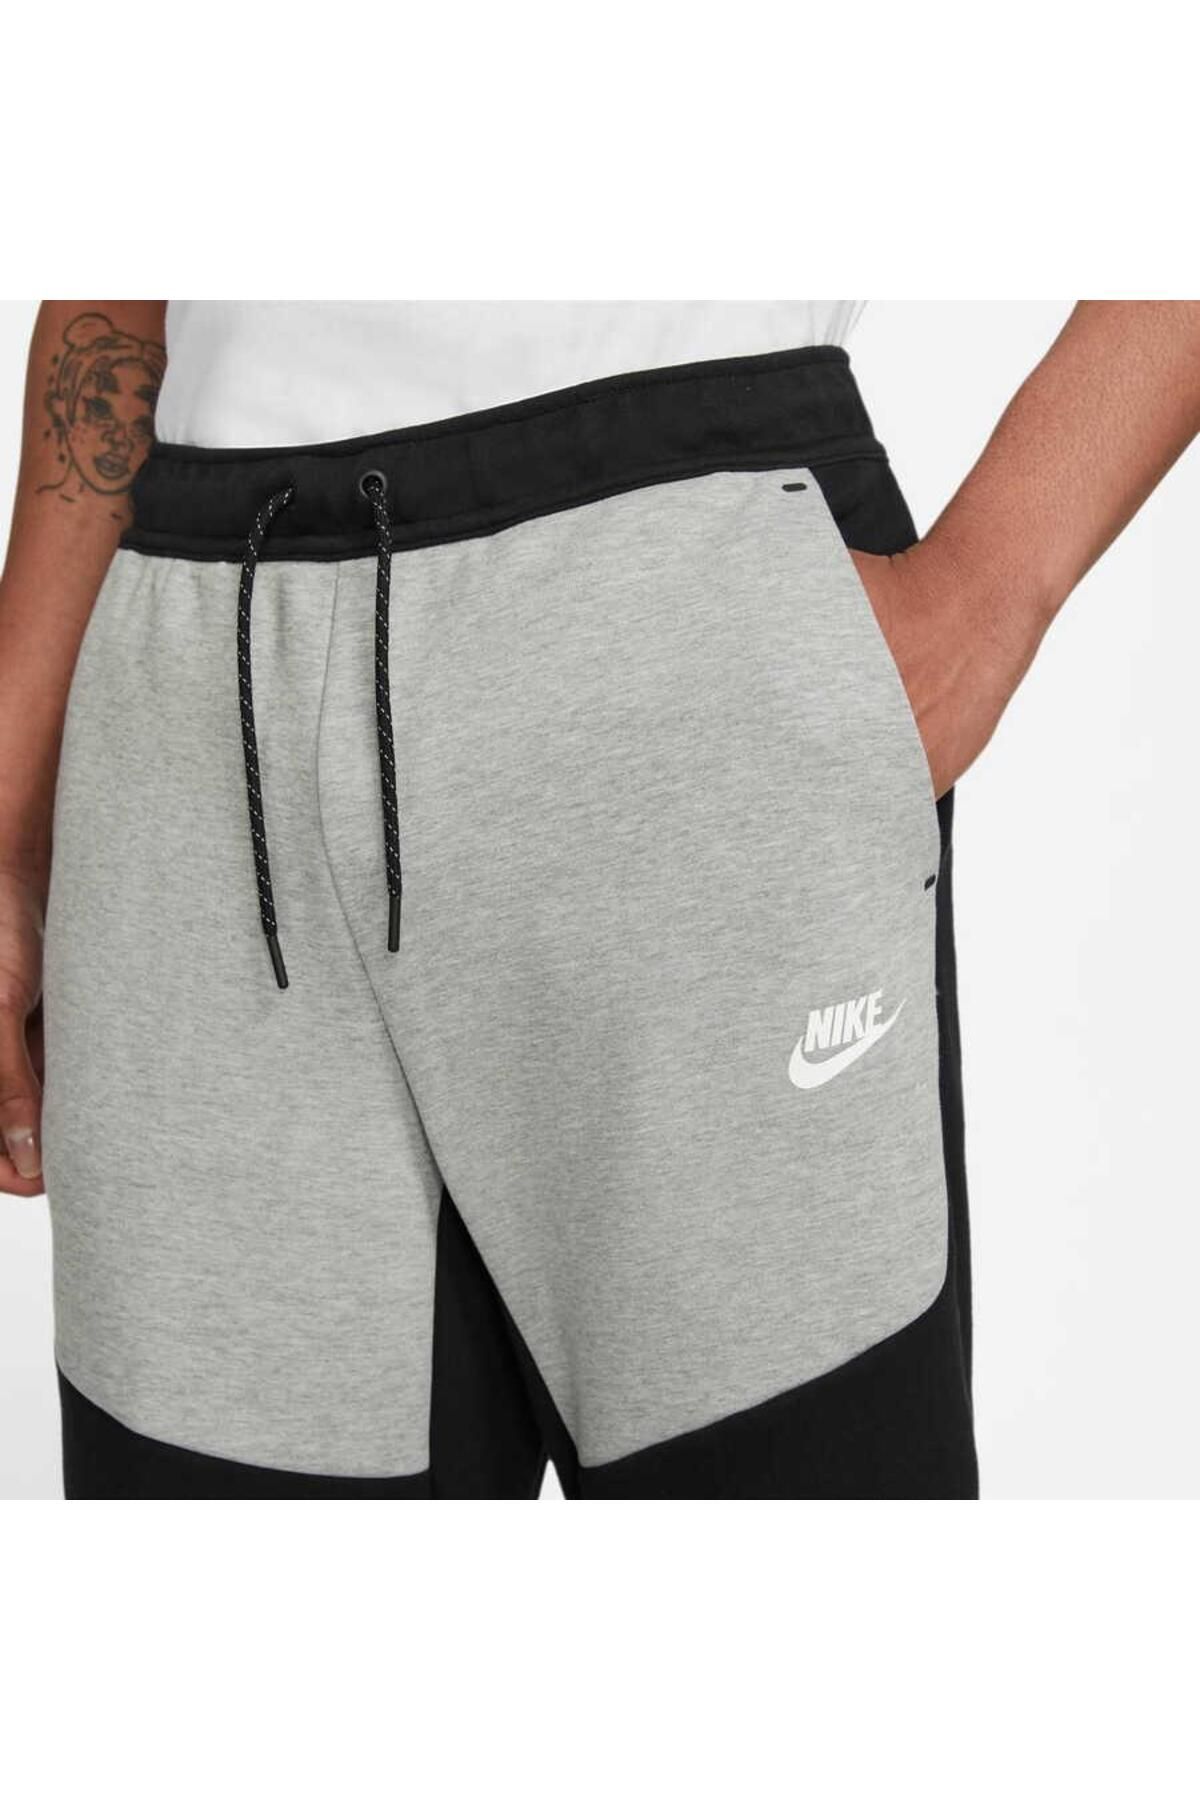 Nike Sportswear Tech Fleece Jogger Men's Sweatpants CU4495-063 - Trendyol